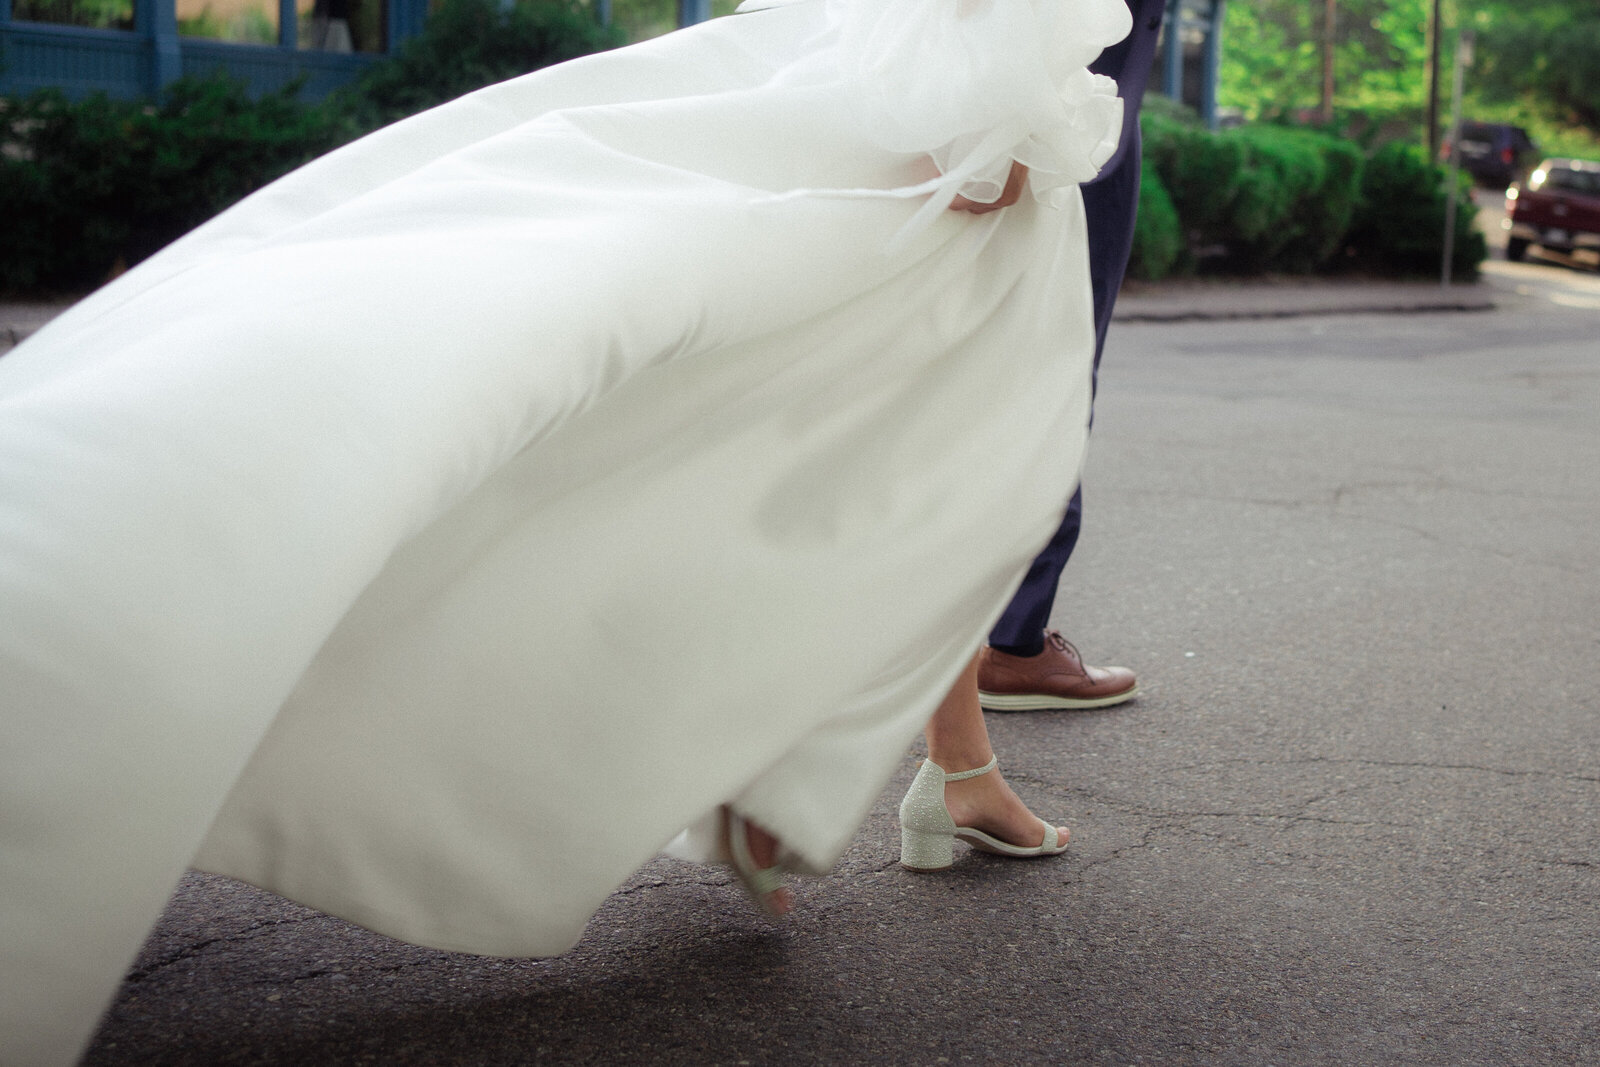 best Virginia wedding photographer captures movement of bride and groom walking